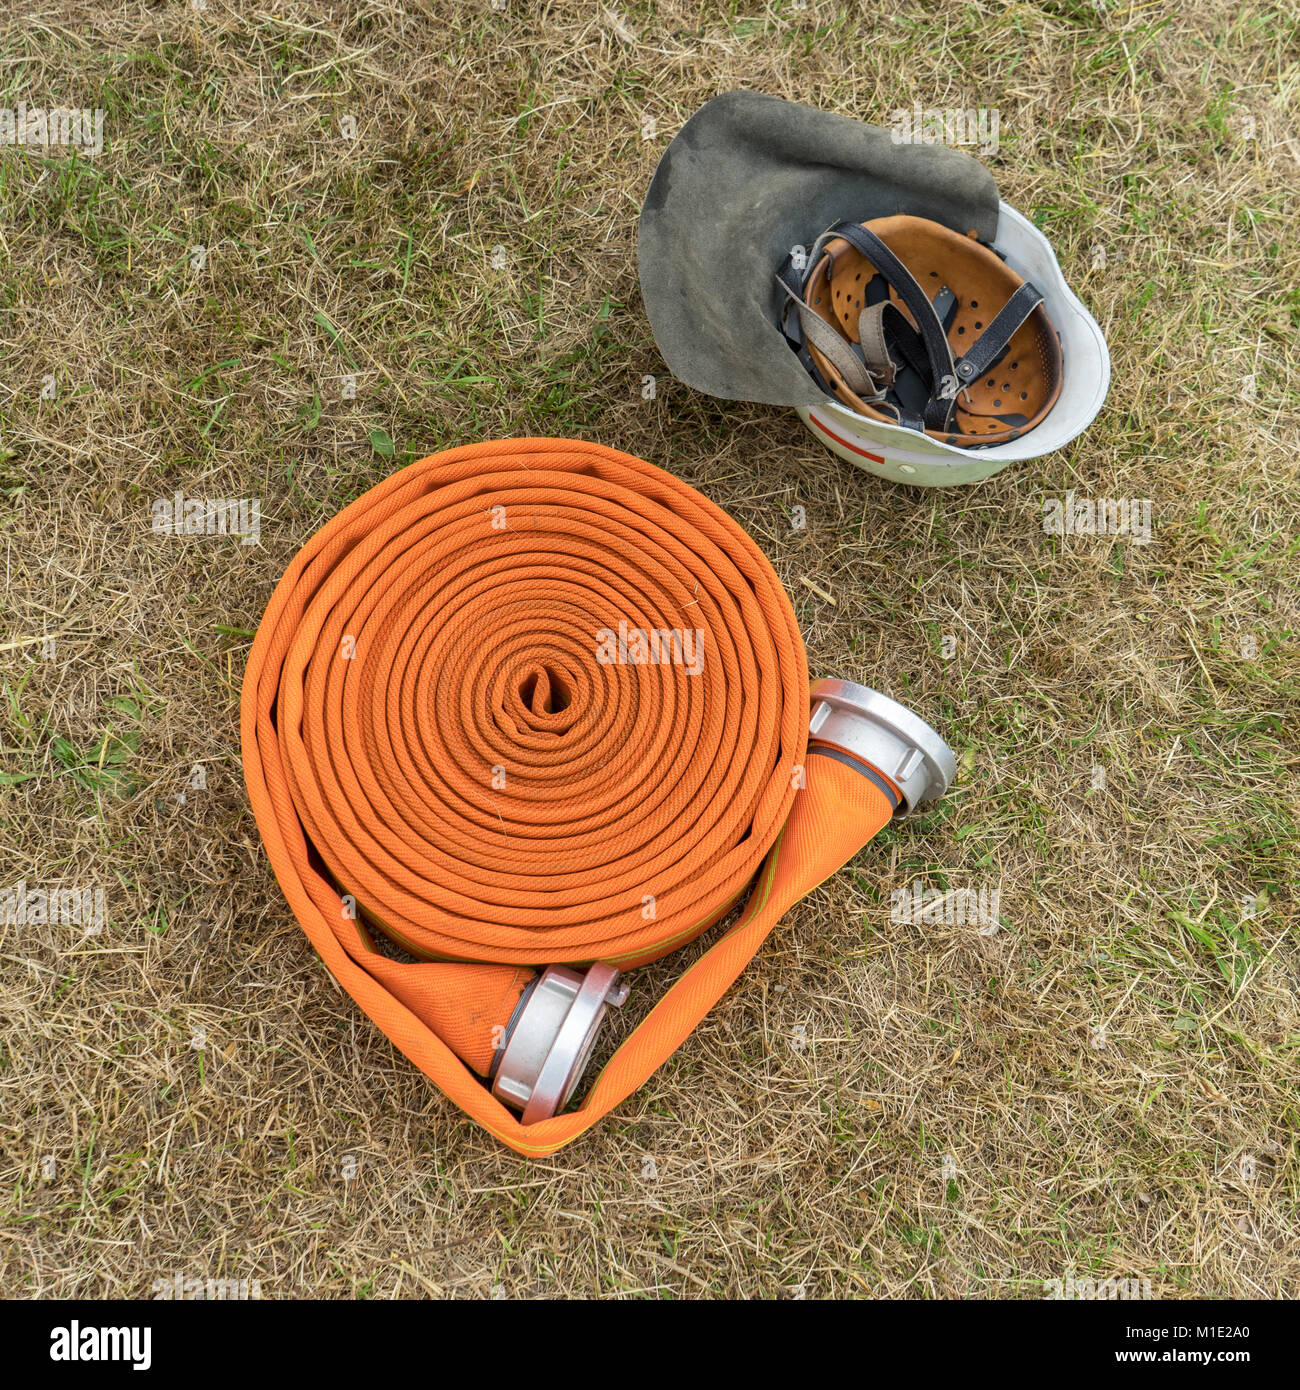 Orange fire il tubo flessibile e il casco di sicurezza si trovano sul prato Foto Stock